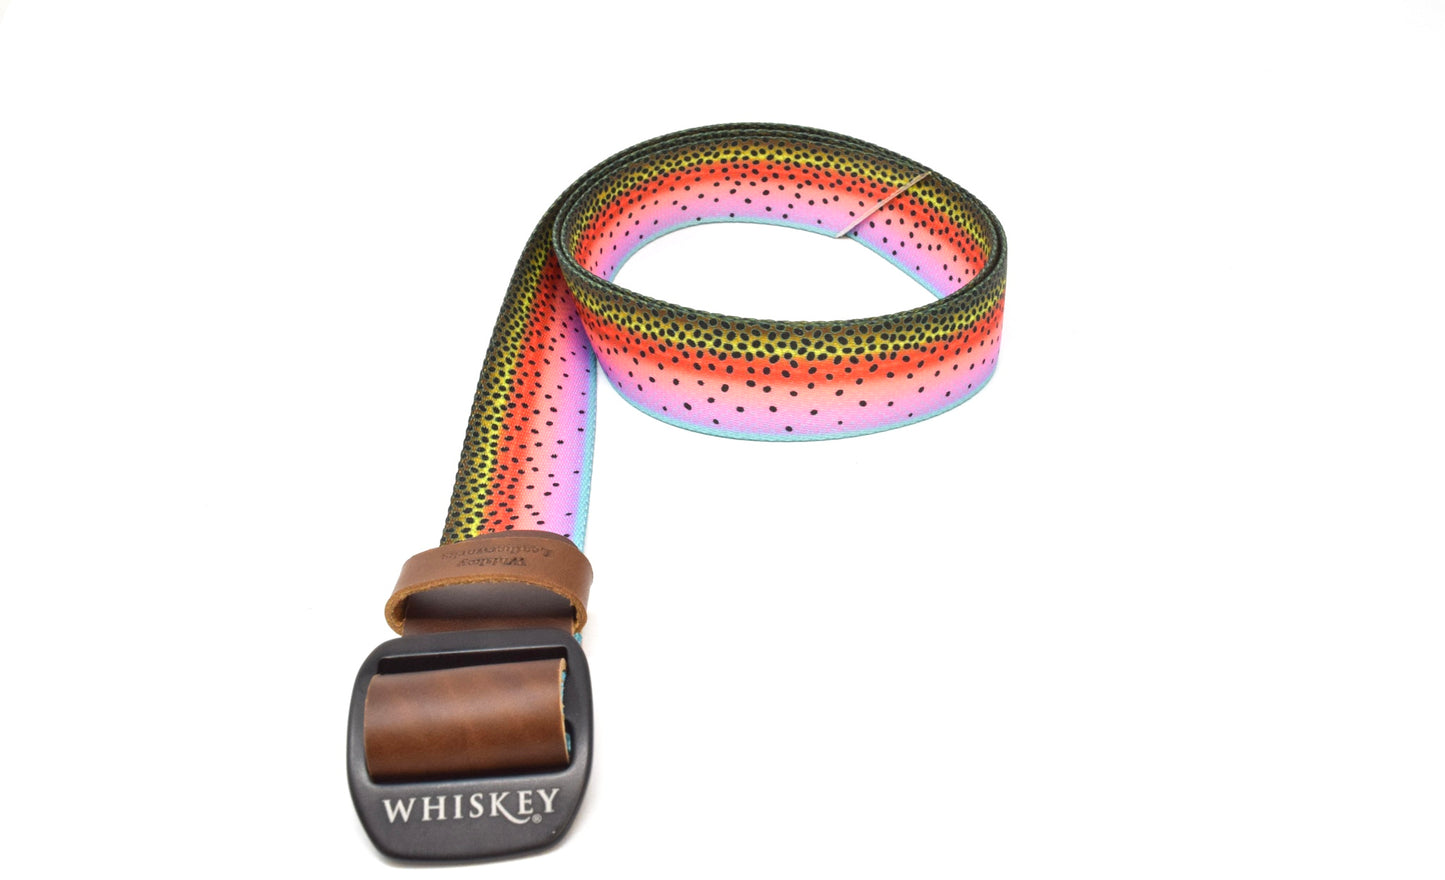 Whiskey Webbing Belts